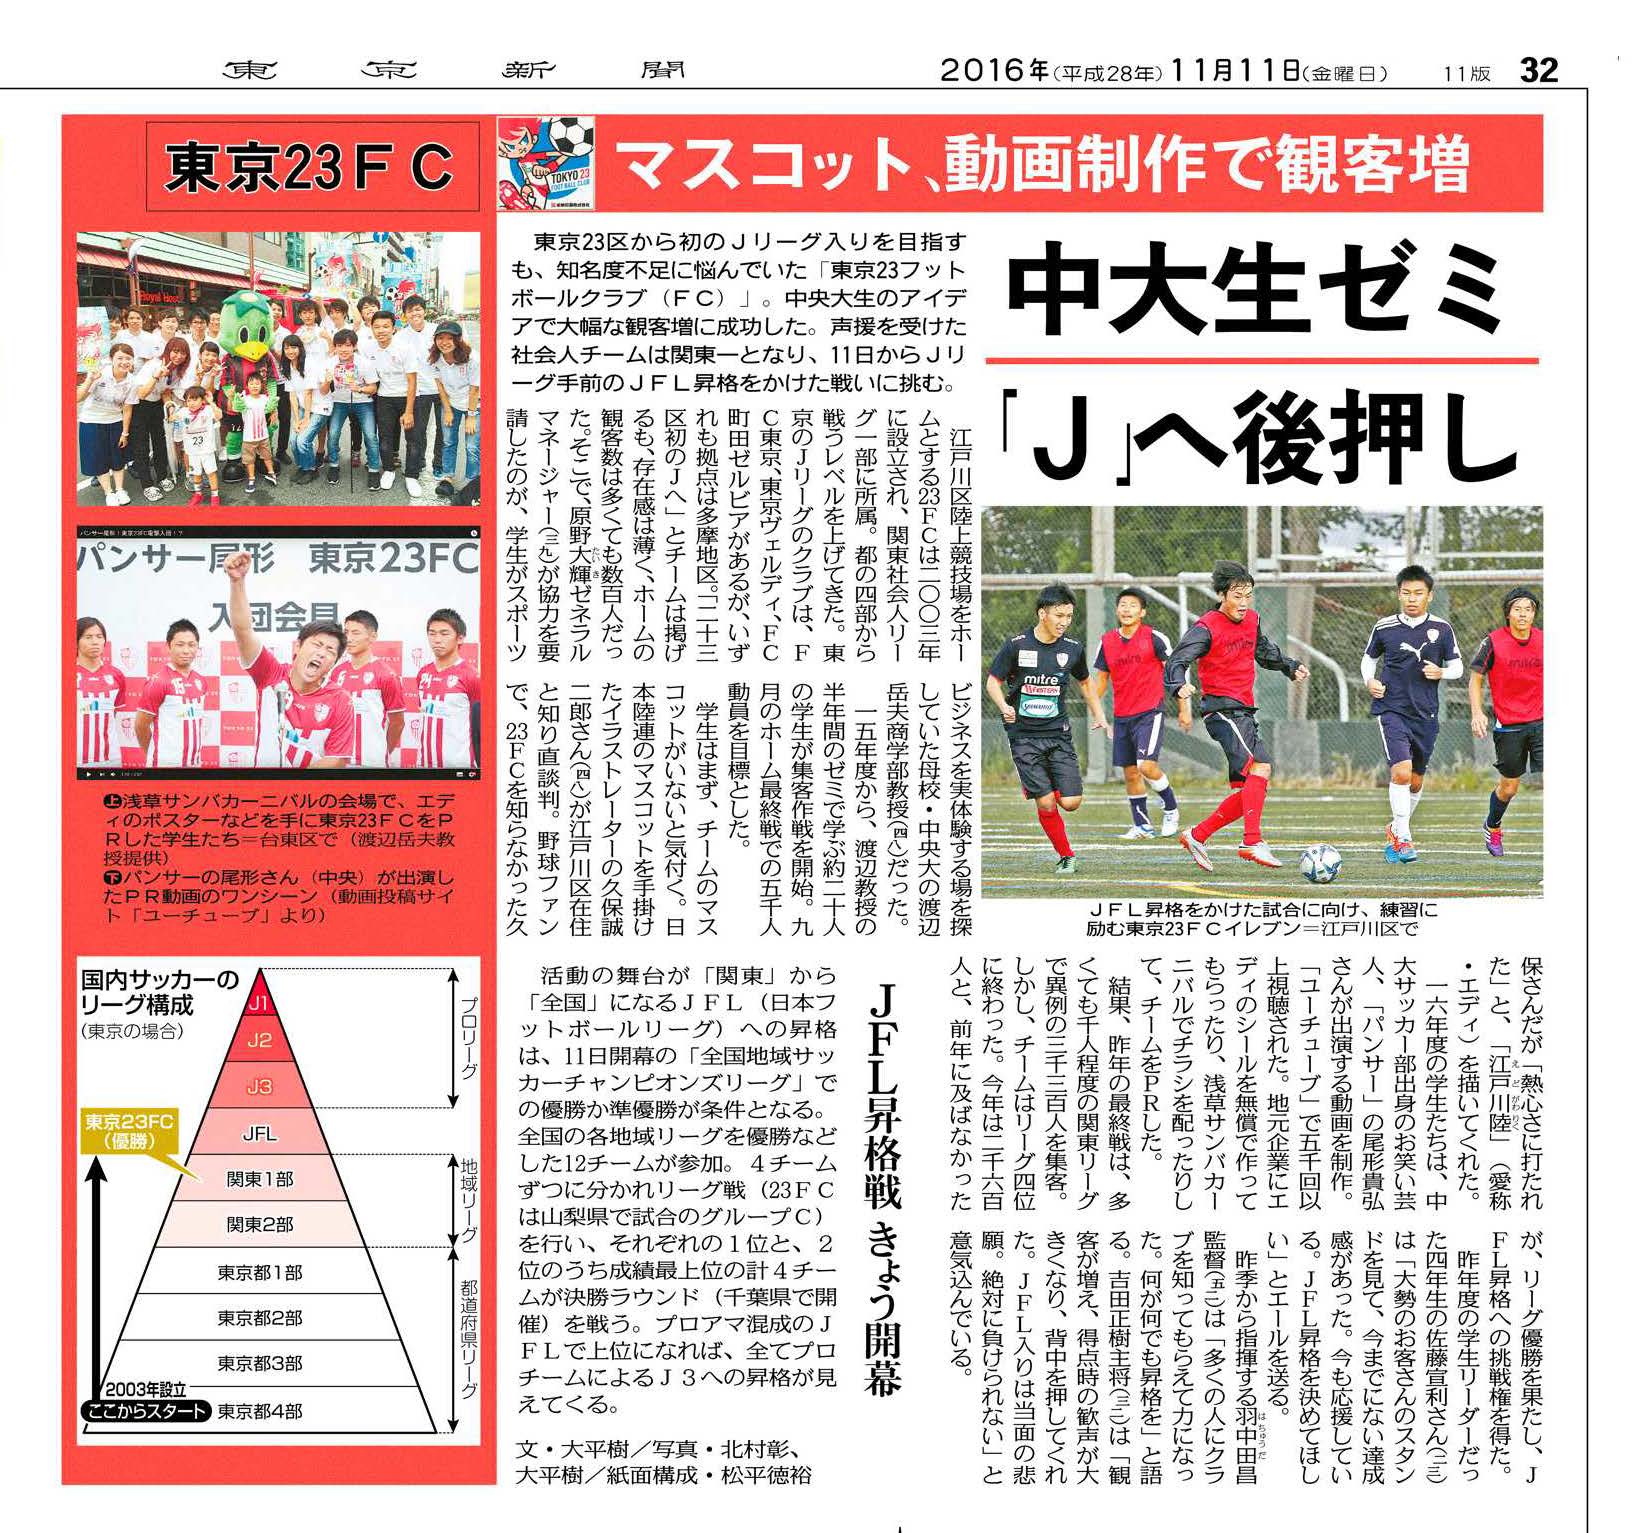 商学部 ビジネス チャレンジ演習 実習 サッカークラブ経営 の活動が東京新聞に掲載されました 中央大学